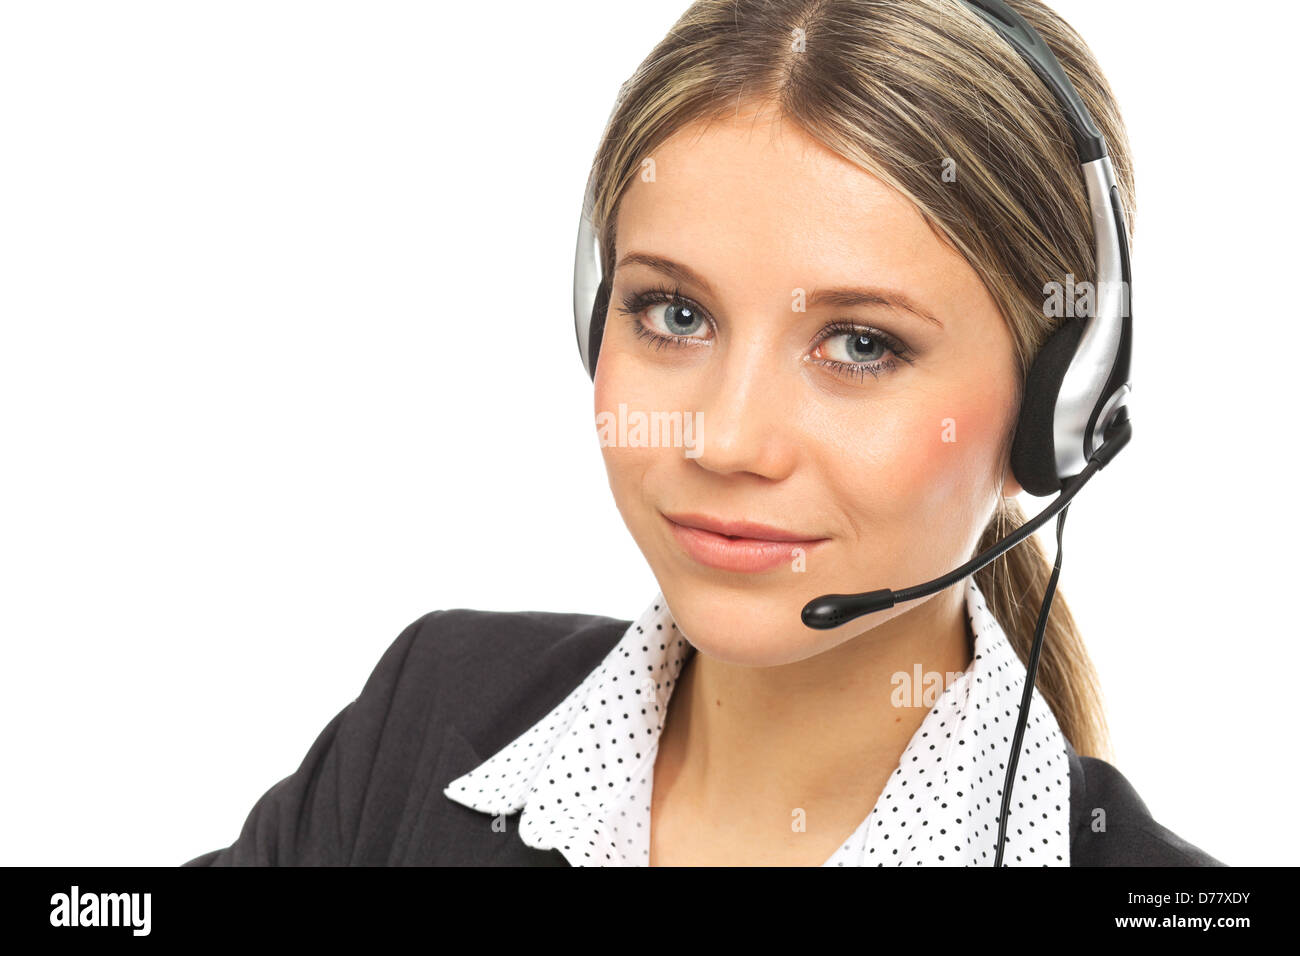 Close up ritratto di una ragazza bionda con le cuffie, illustrante il supporto operatore telefonico, su bianco Foto Stock